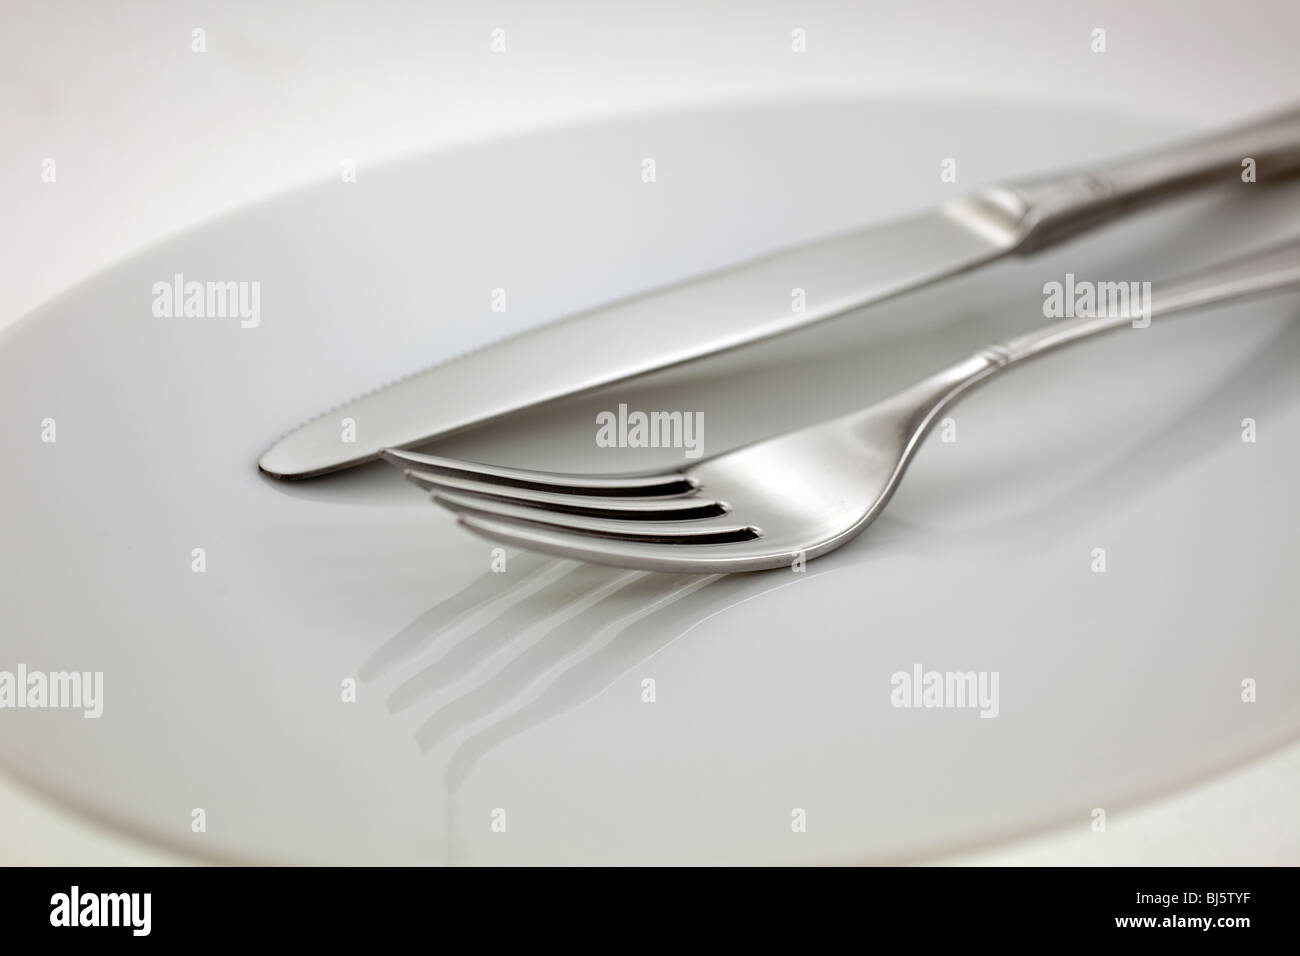 Posate in acciaio: forchetta e coltello su una piastra bianca Foto Stock